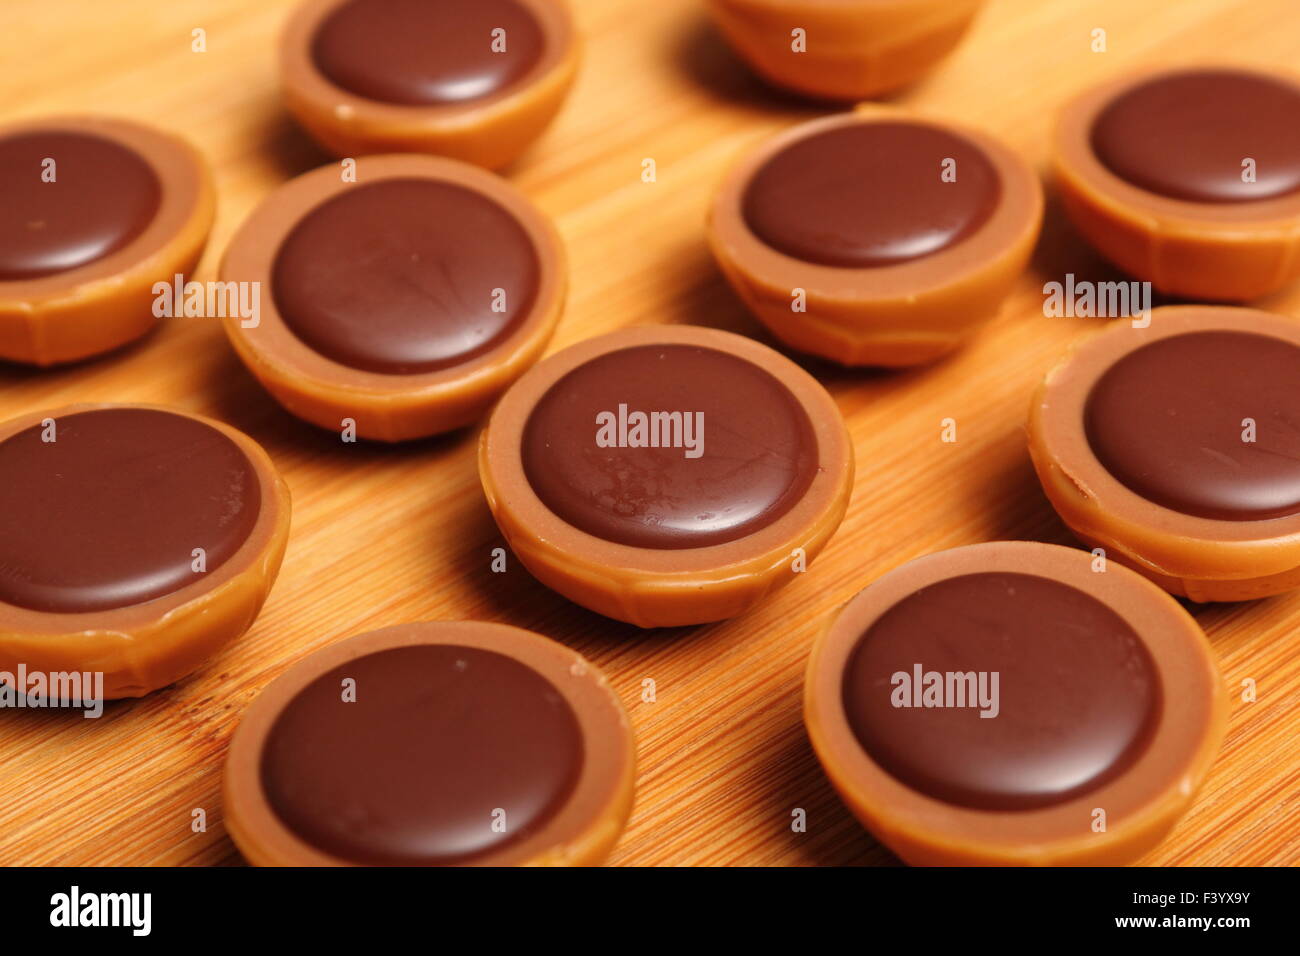 Bonbons au caramel à la noisette et au chocolat Photo Stock - Alamy